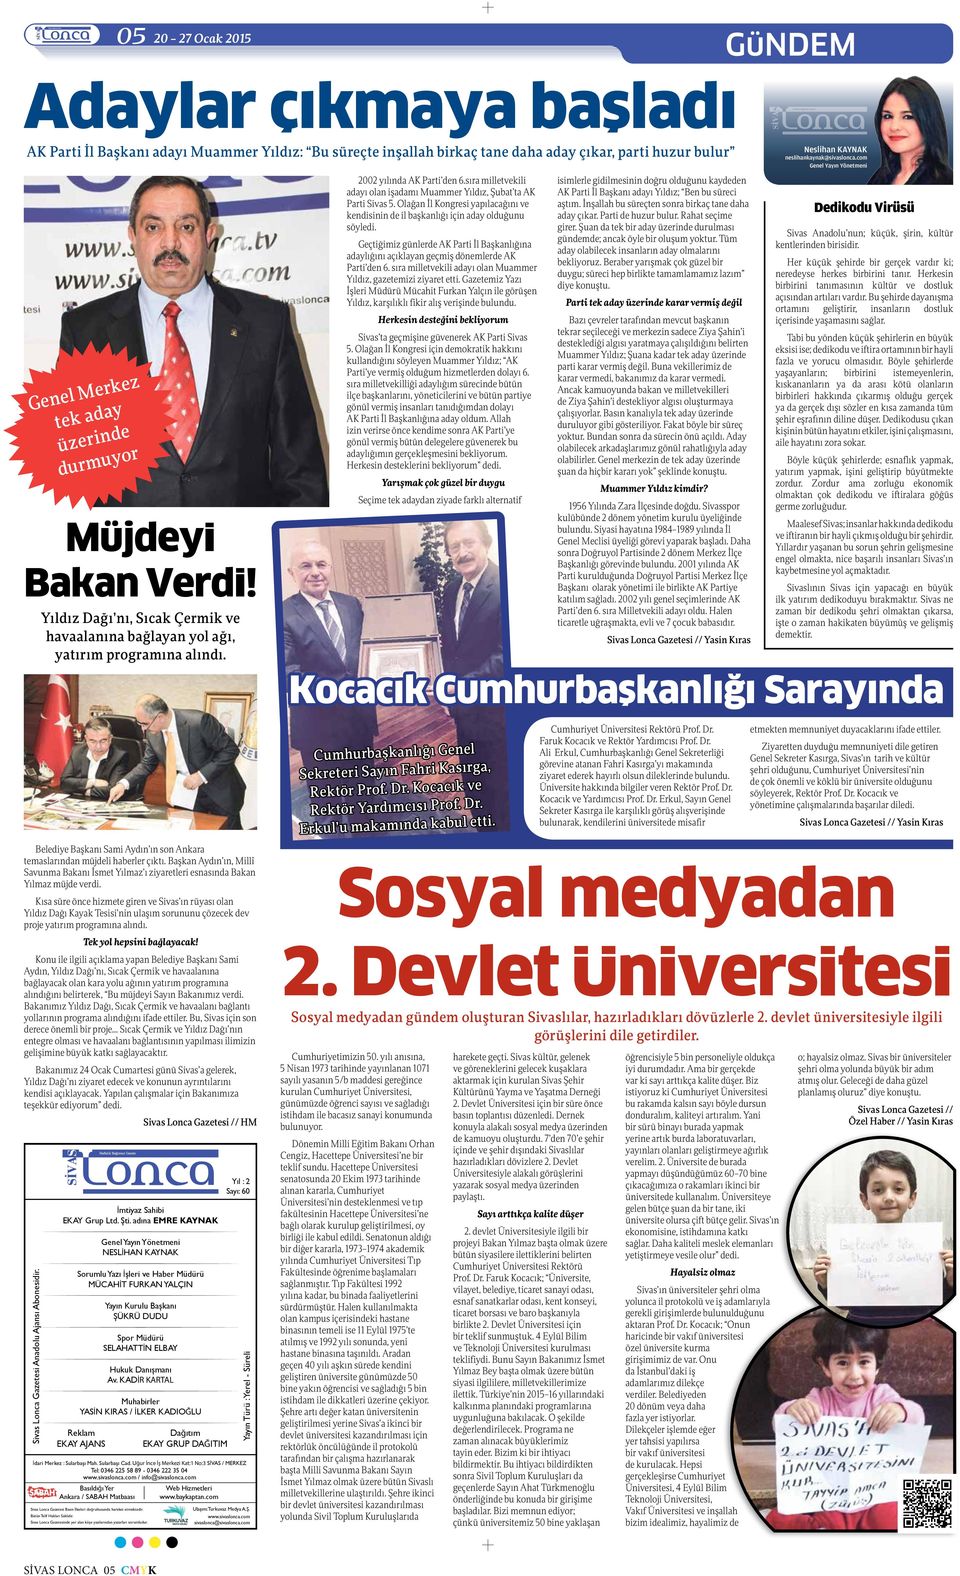 sıra milletvekili adayı olan işadamı Muammer Yıldız, Şubat ta AK Parti Sivas 5. Olağan İl Kongresi yapılacağını ve kendisinin de il başkanlığı için aday olduğunu söyledi.